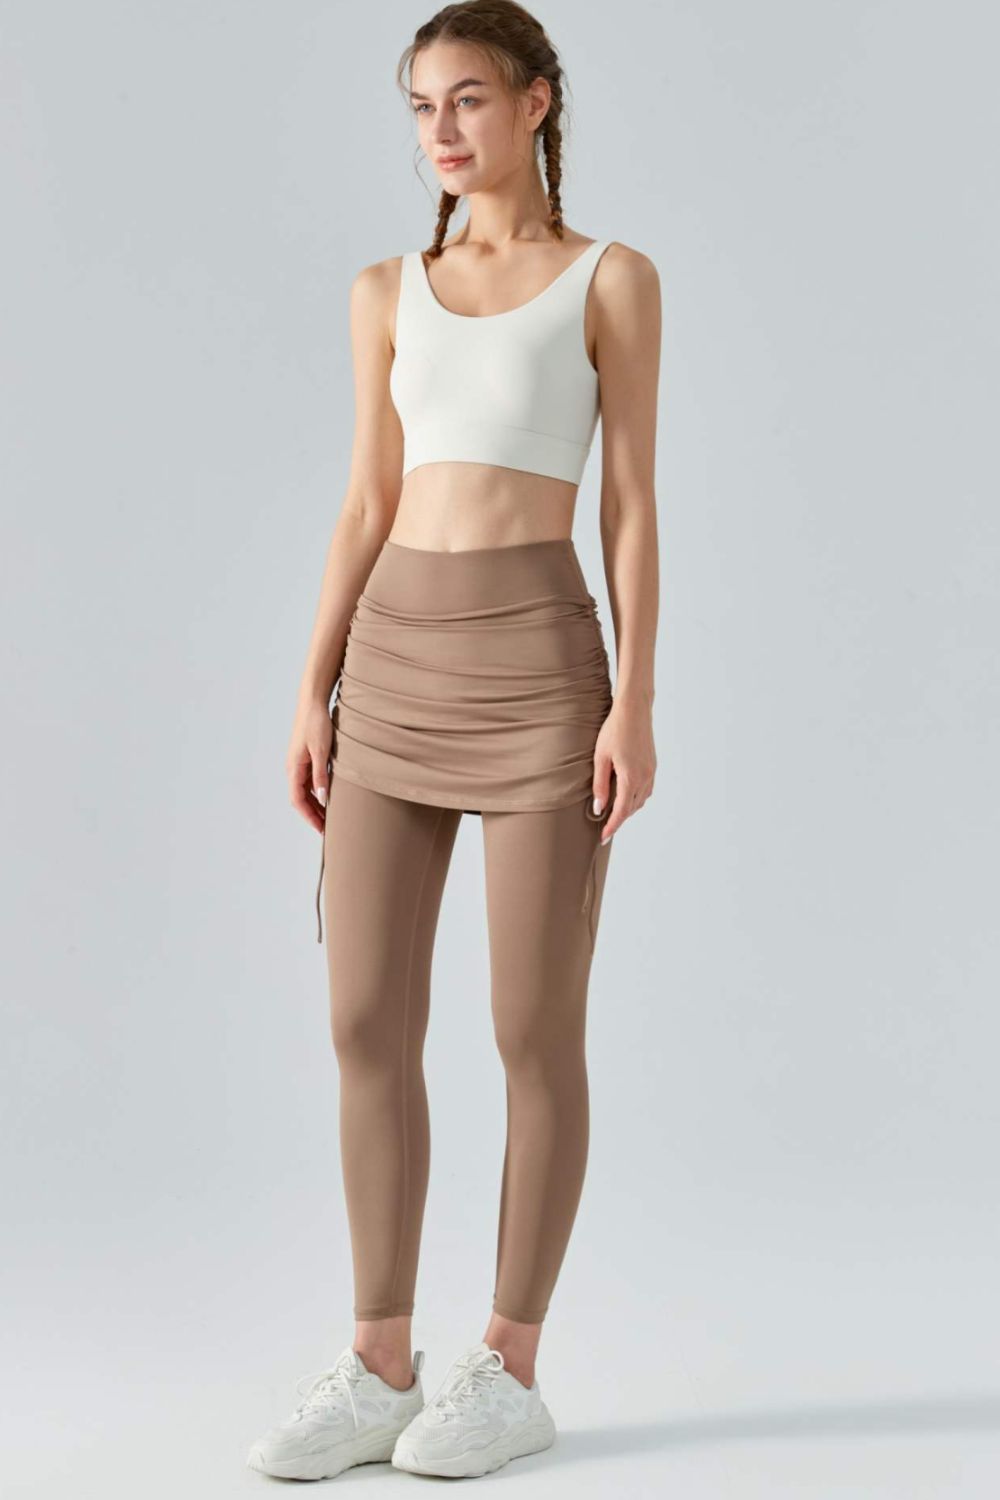 Skirted Leggings Skeggings Asymmetric Skirt Active Wear Yoga Super Soft,  Stretch and Strong Black the Shakti Leggings - Etsy